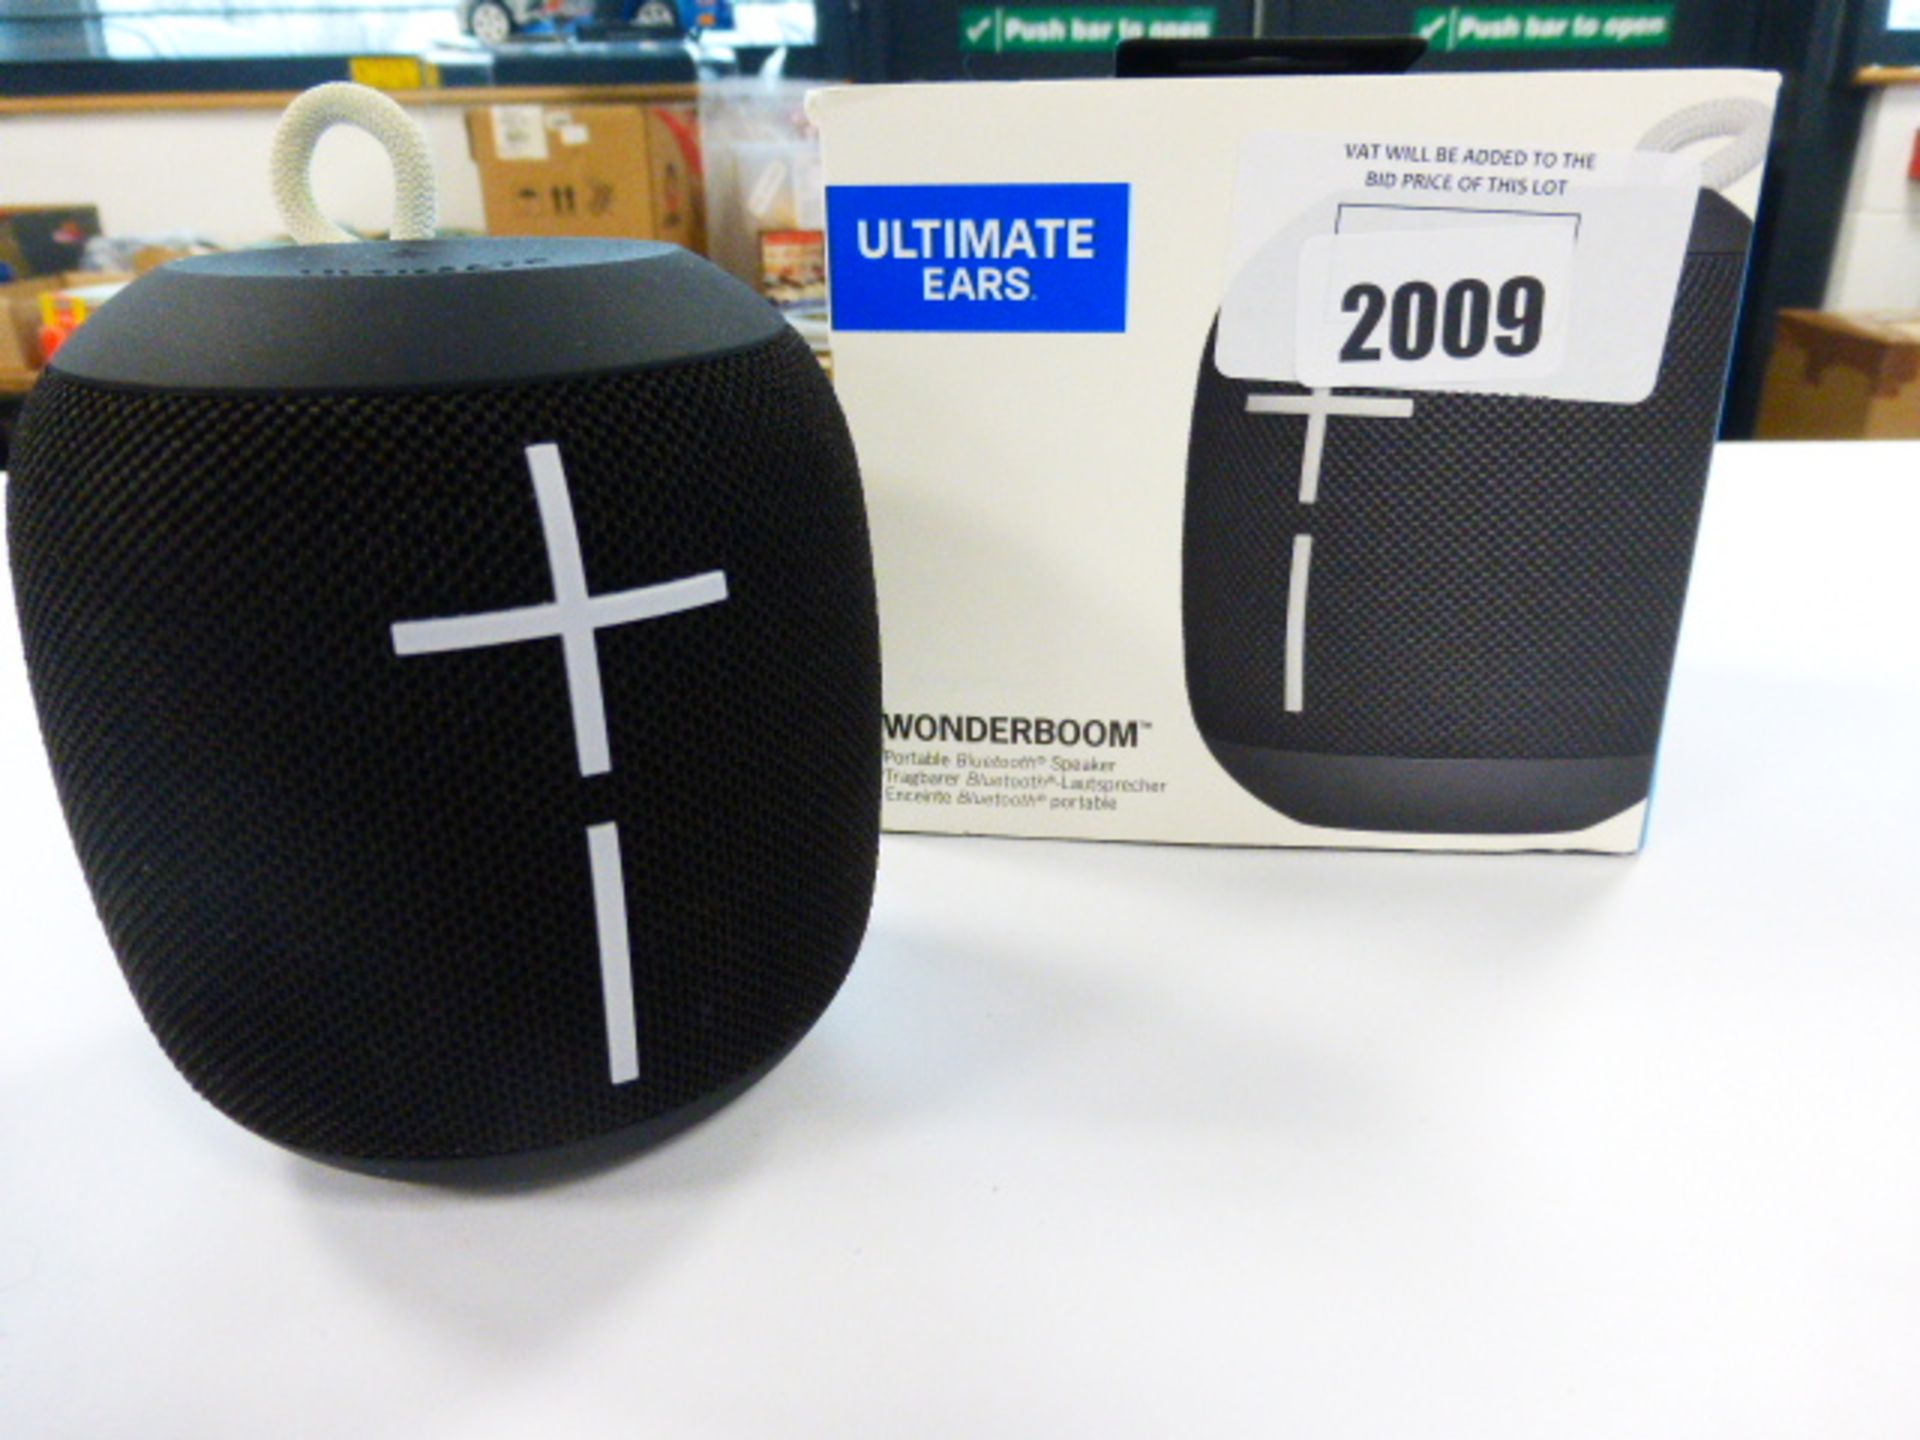 Ultimate Ears Wonderboom bluetooth speaker in box